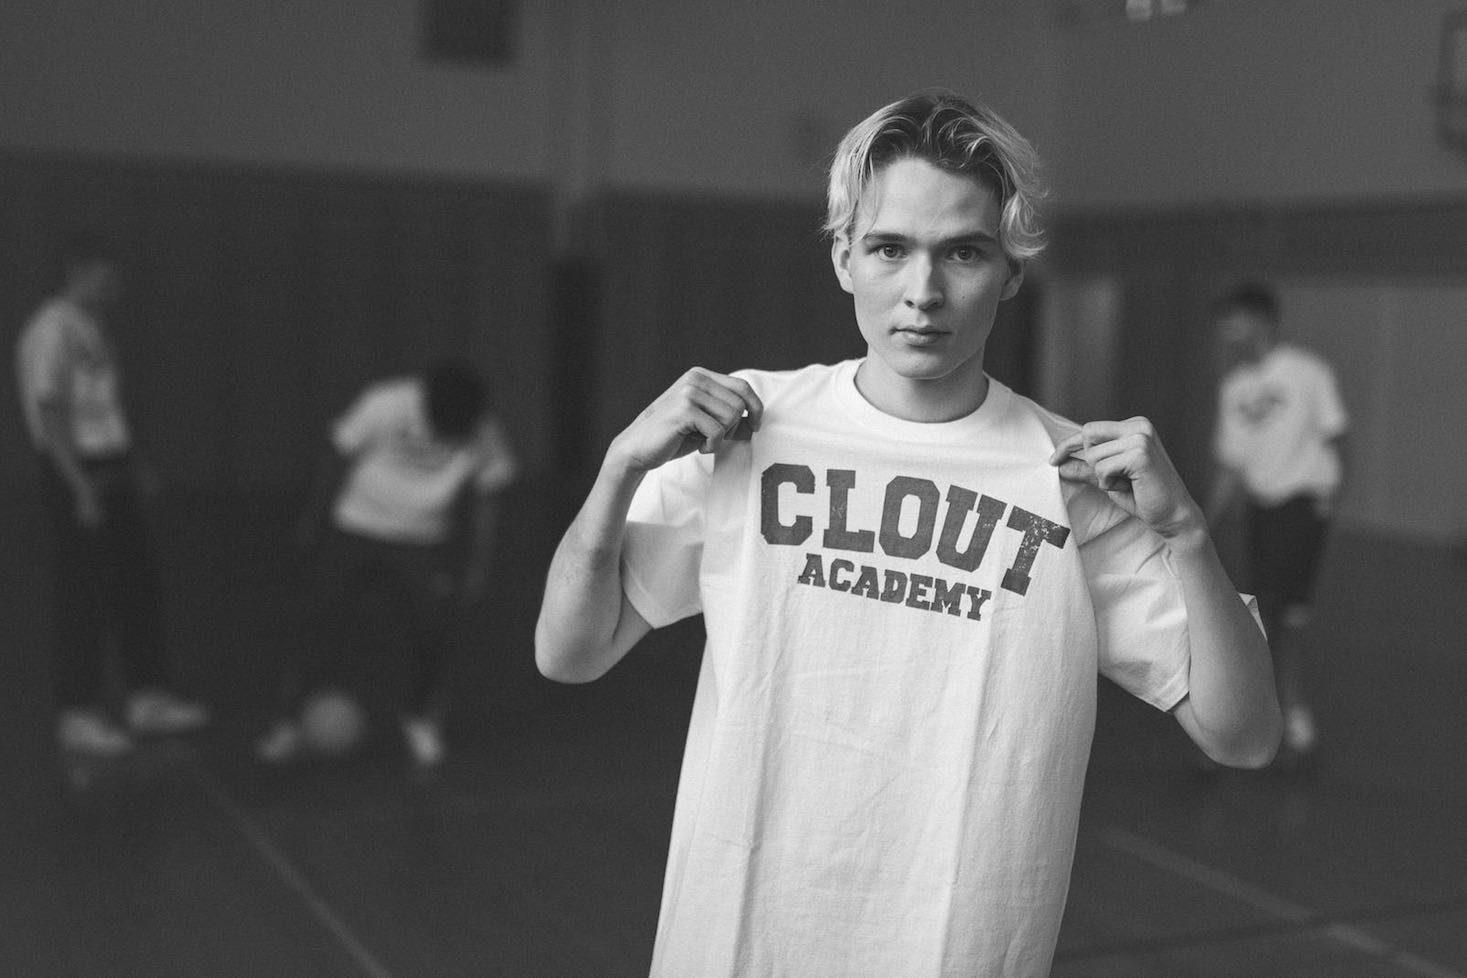 Ibe rokkaa Clout Academy t-paitaa päällä.